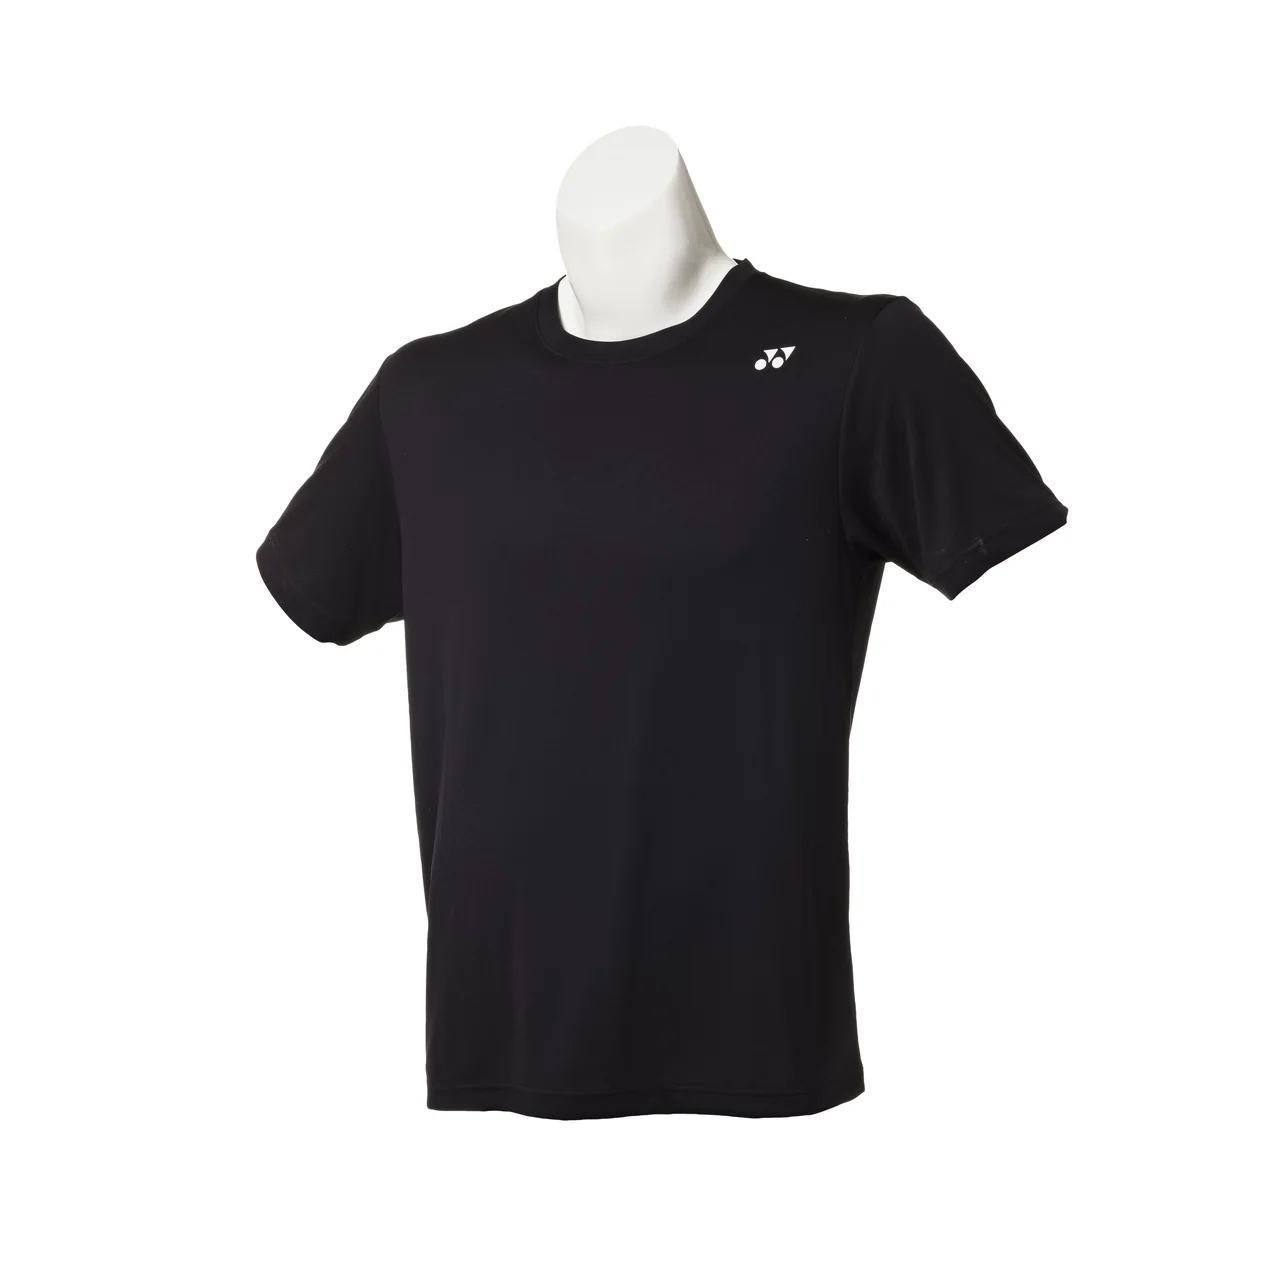 Yonex Women's Milas Basic T-shirt Black Size XL